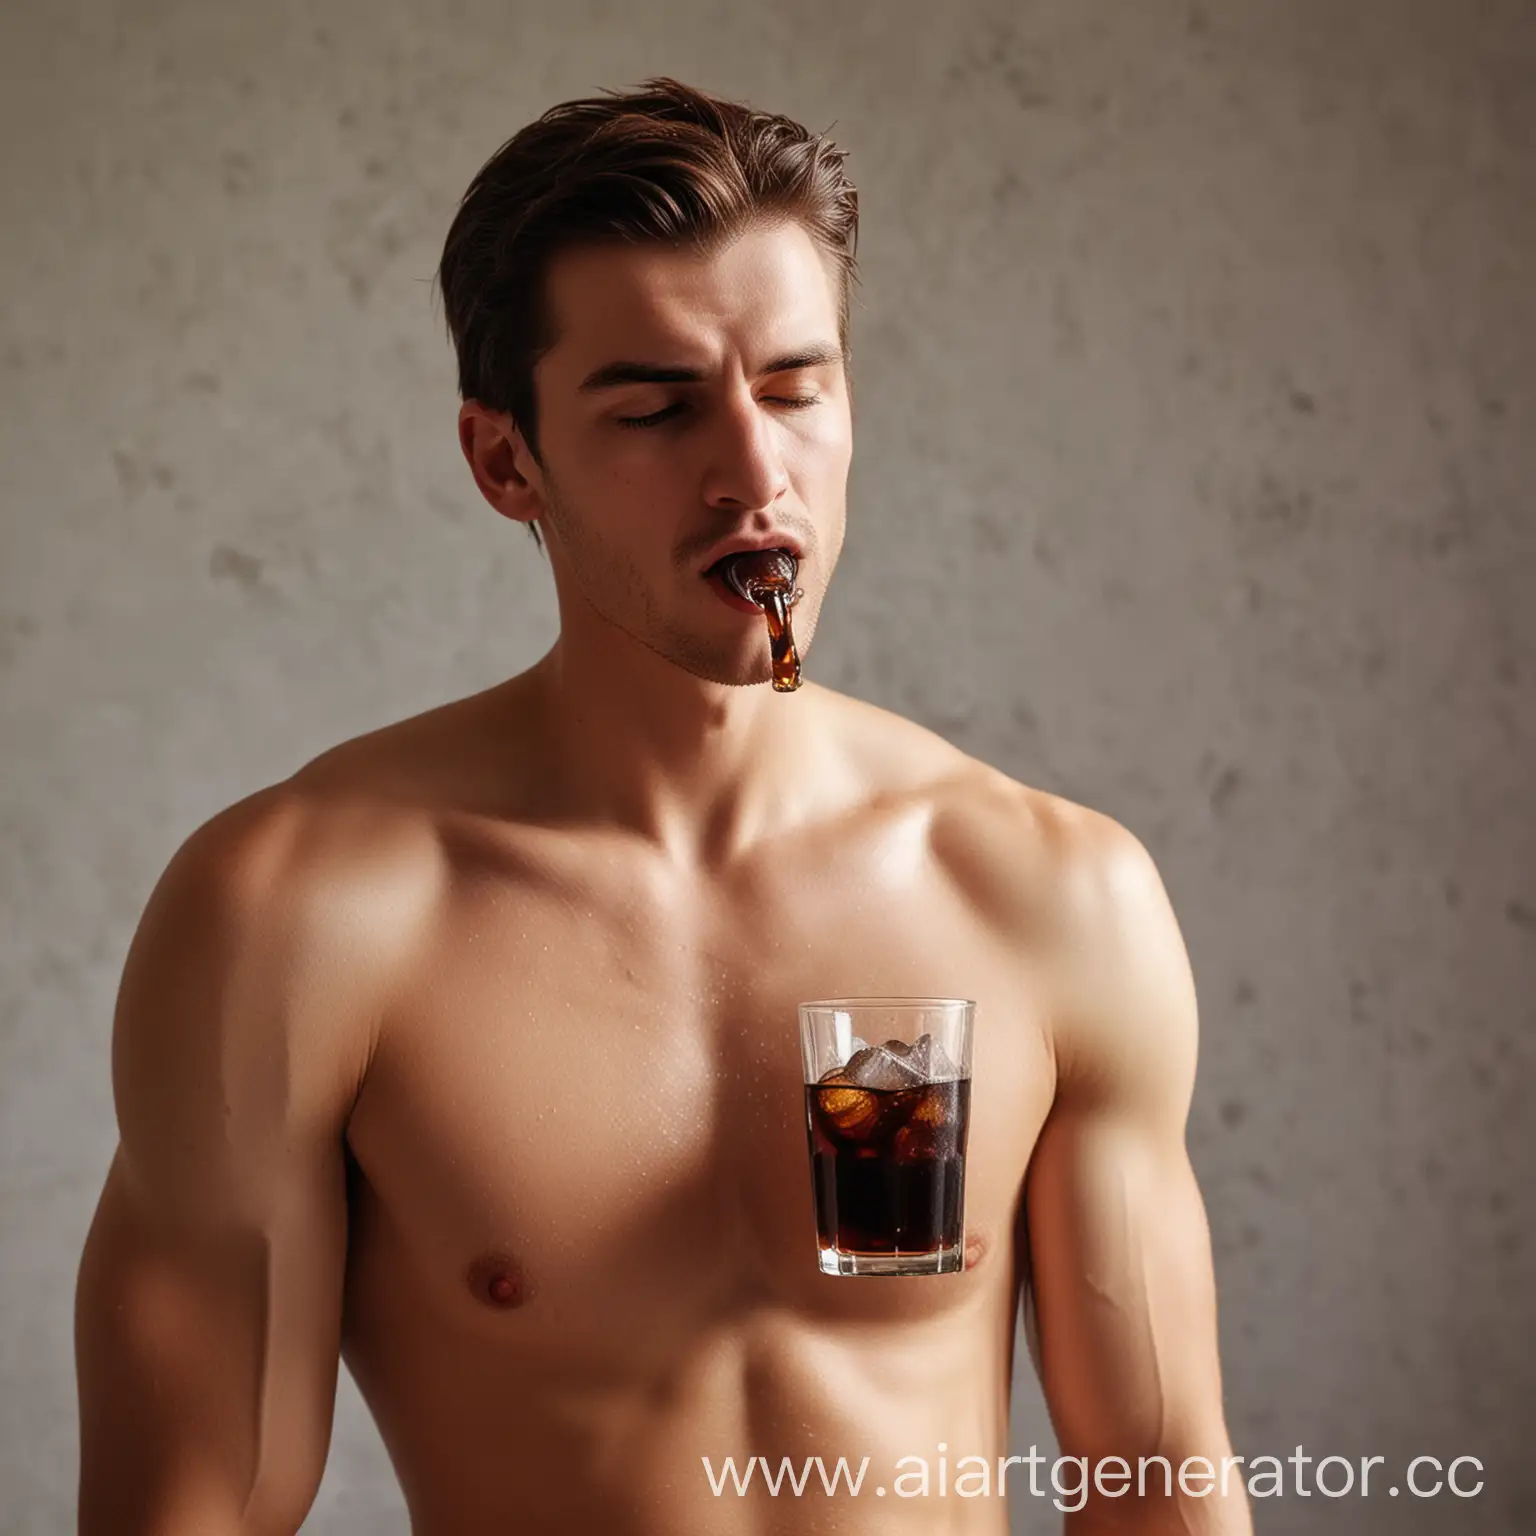 BareChested-Man-Enjoying-Refreshing-Cola-with-Ice